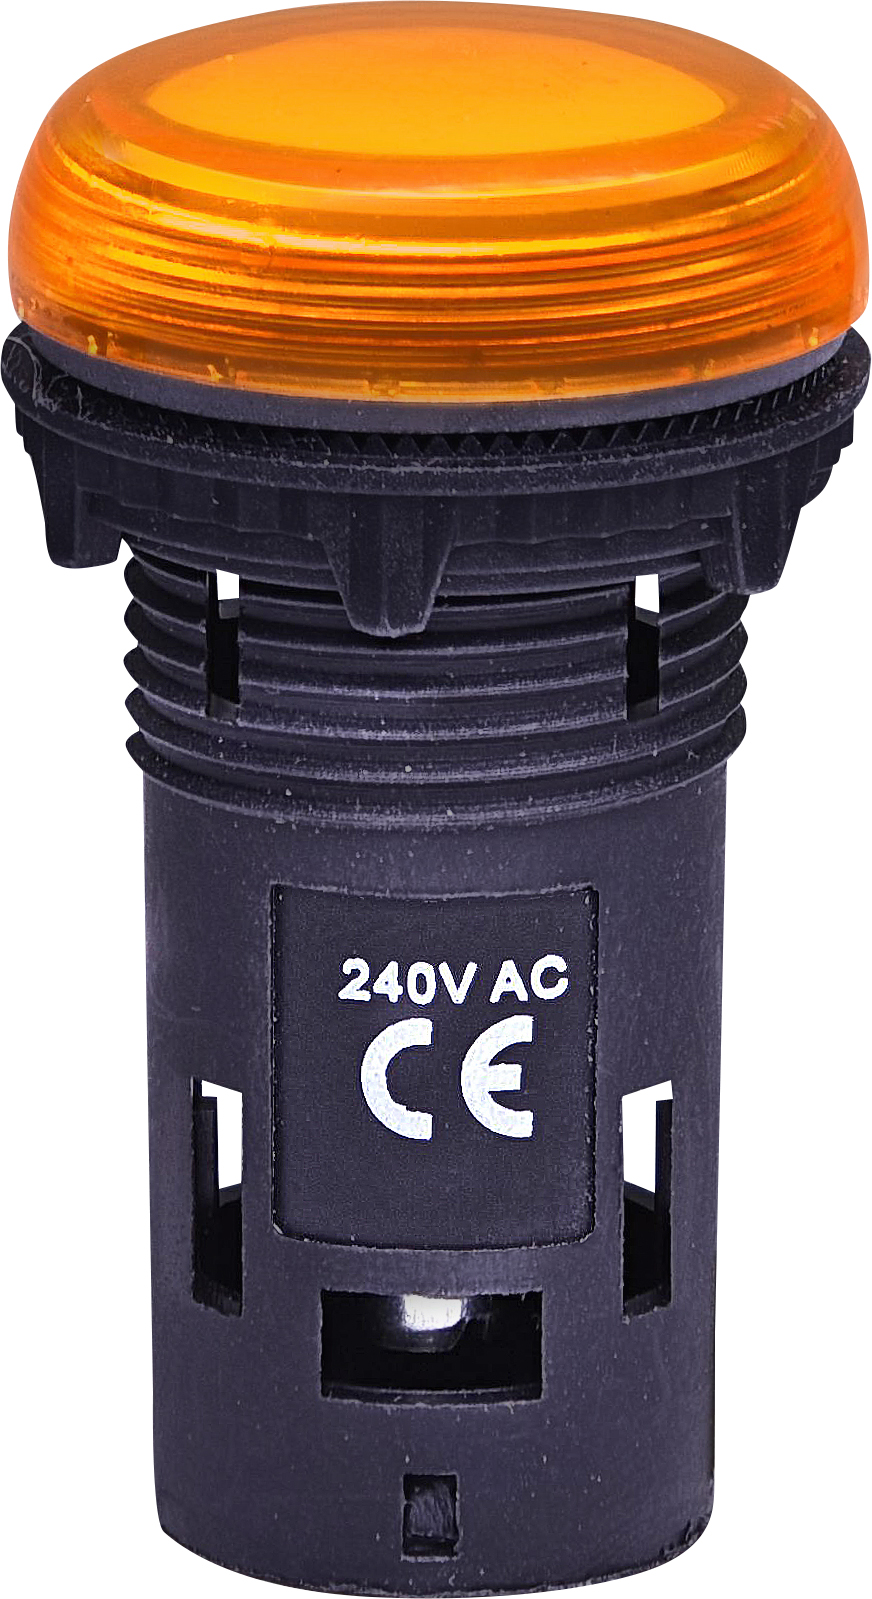 Лампа сигнал. LED матовая ECLI-240A-A 240V AC (оранжевая)